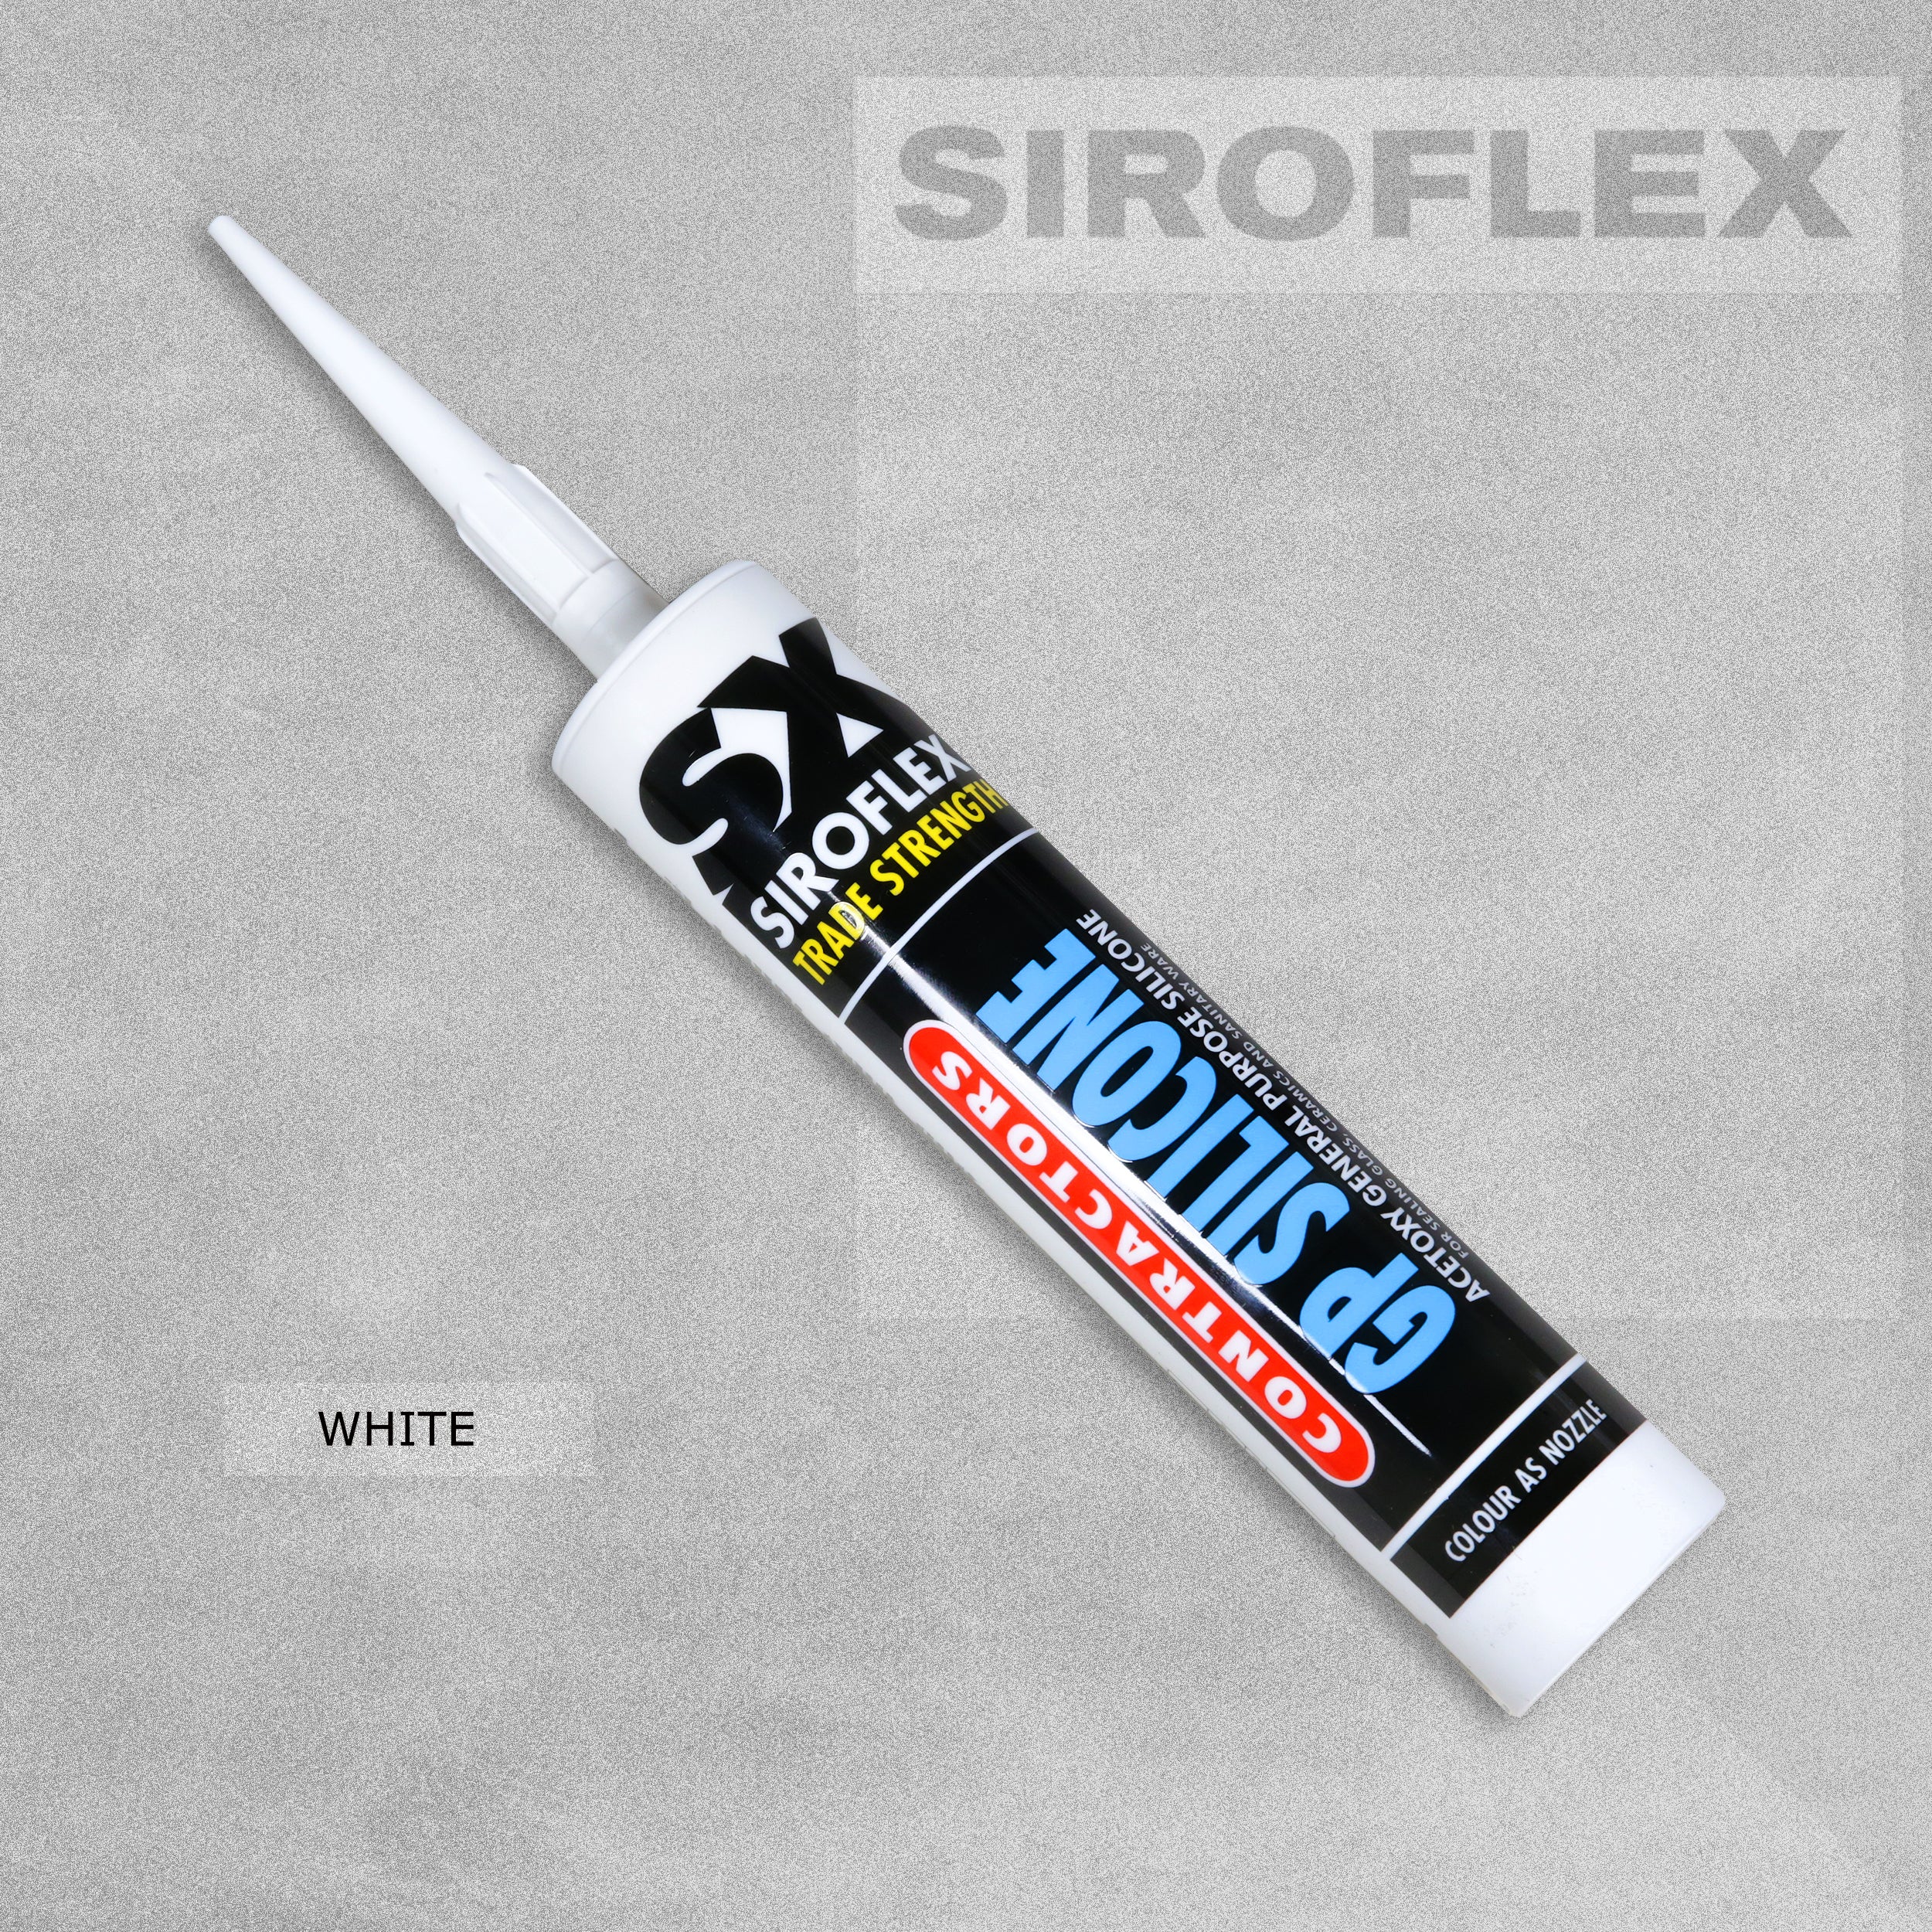 Siroflex Contractors General Purpose Silicone White - 300ml